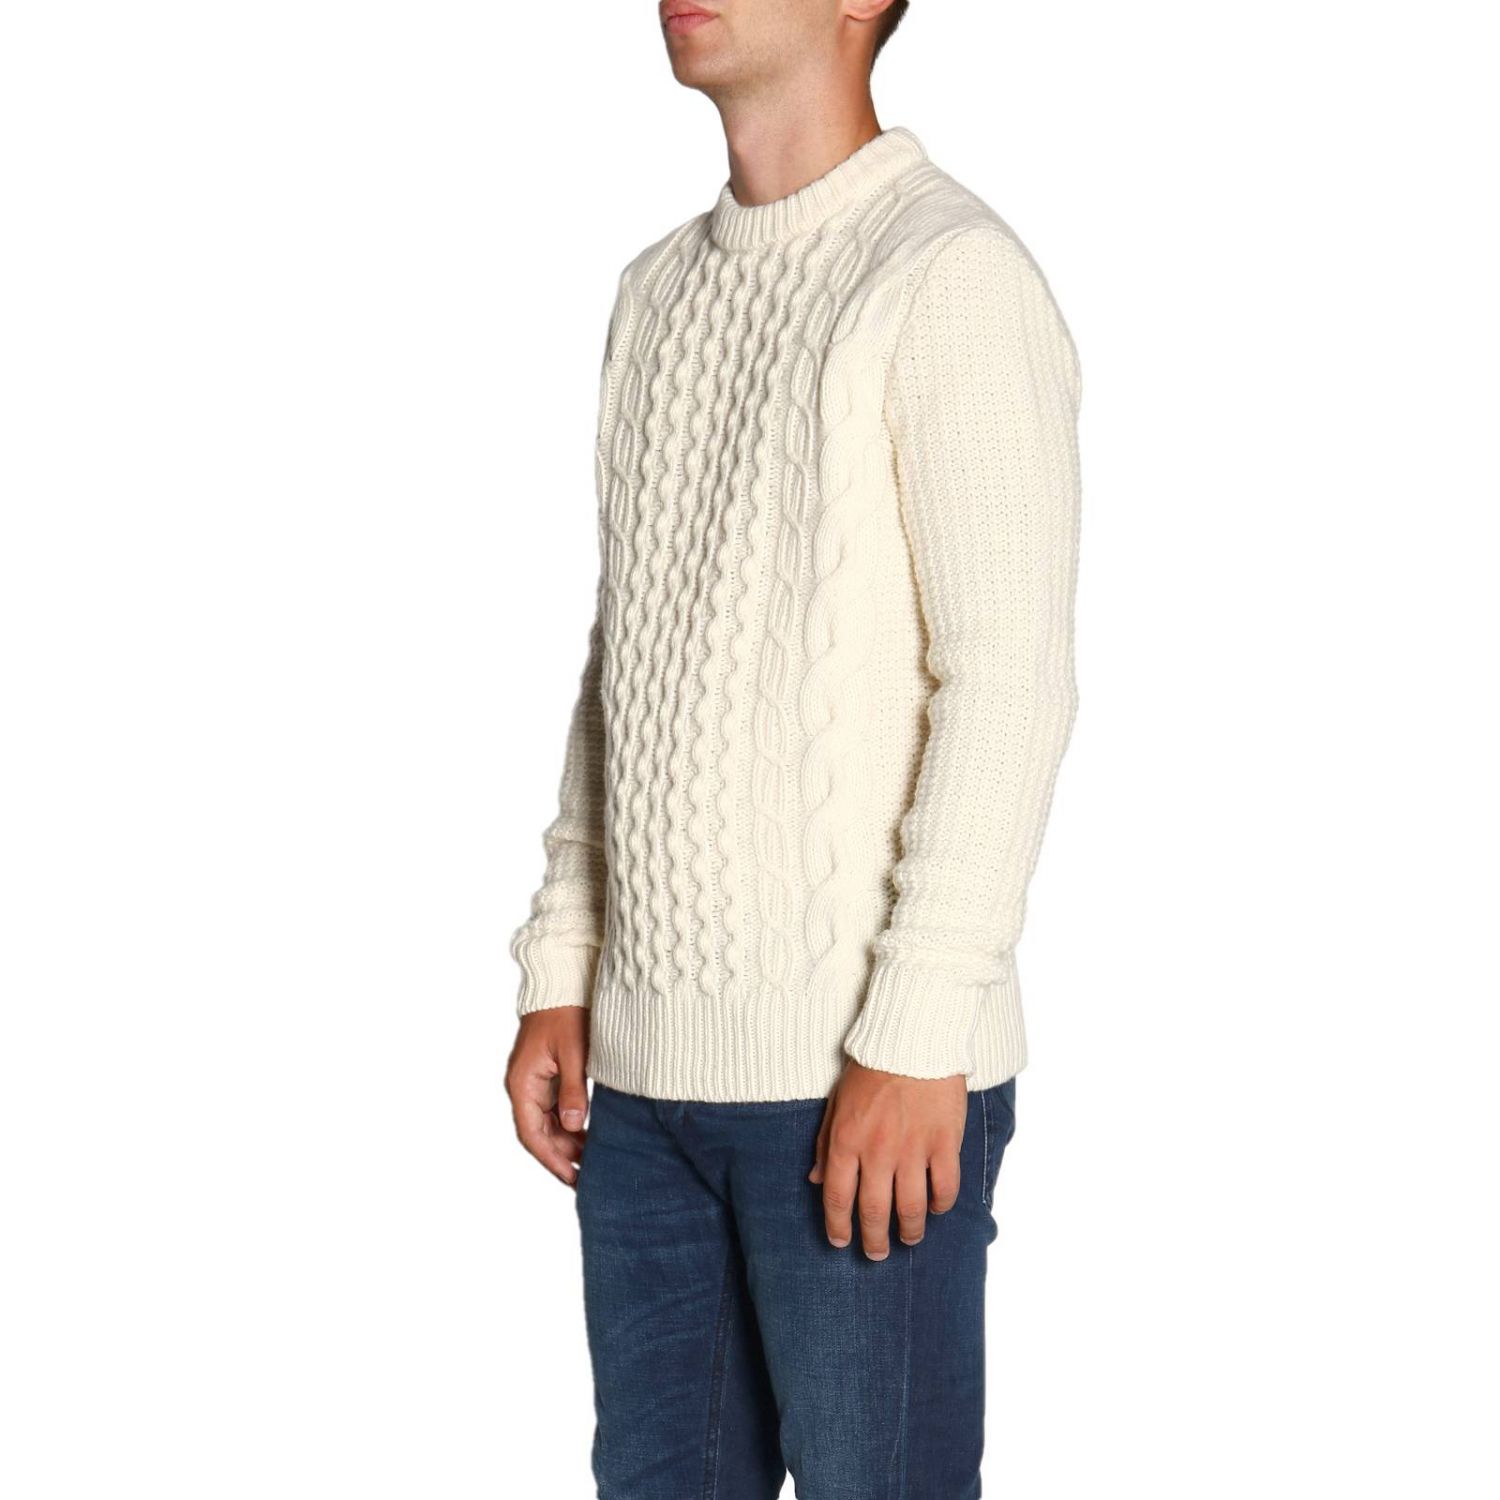 Sweater men Woolrich | Sweater Woolrich Men White | Sweater Woolrich ...